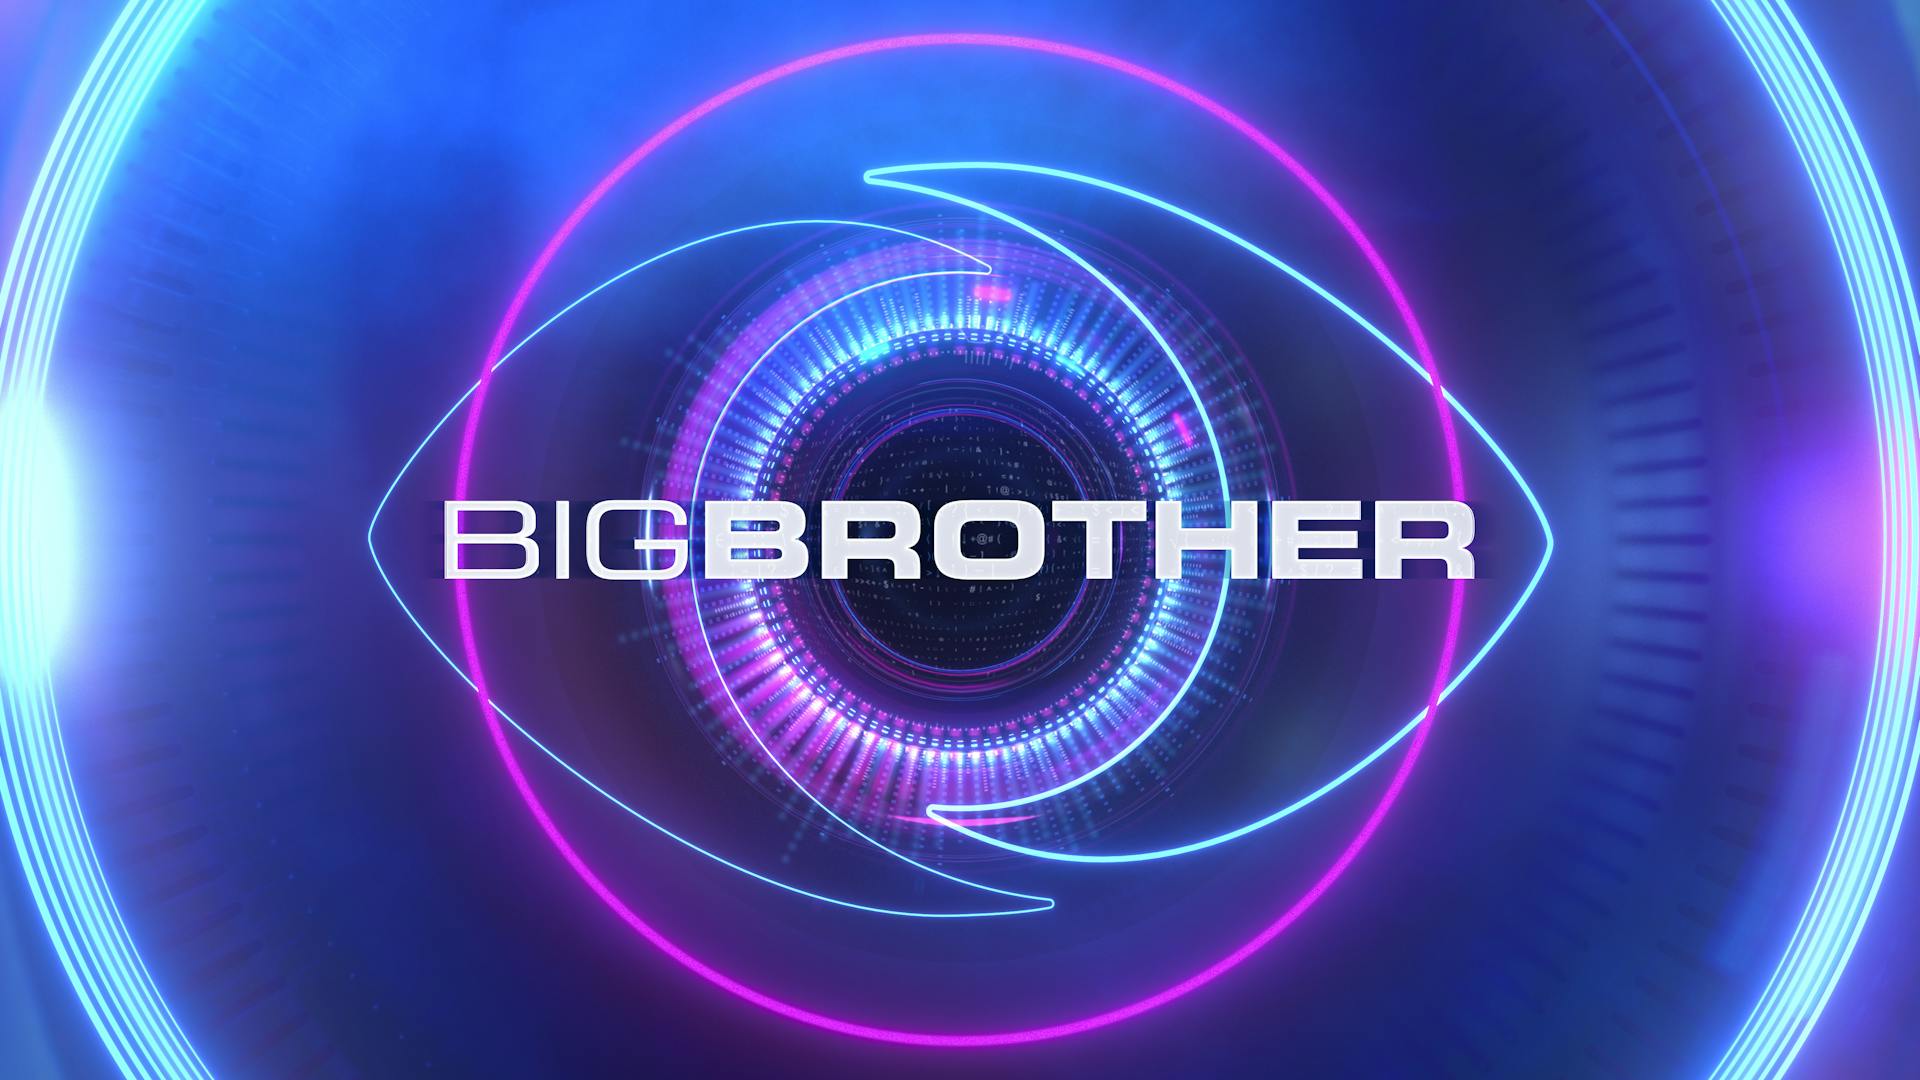 RTL | Gezocht: bewoners voor Big Brother huis